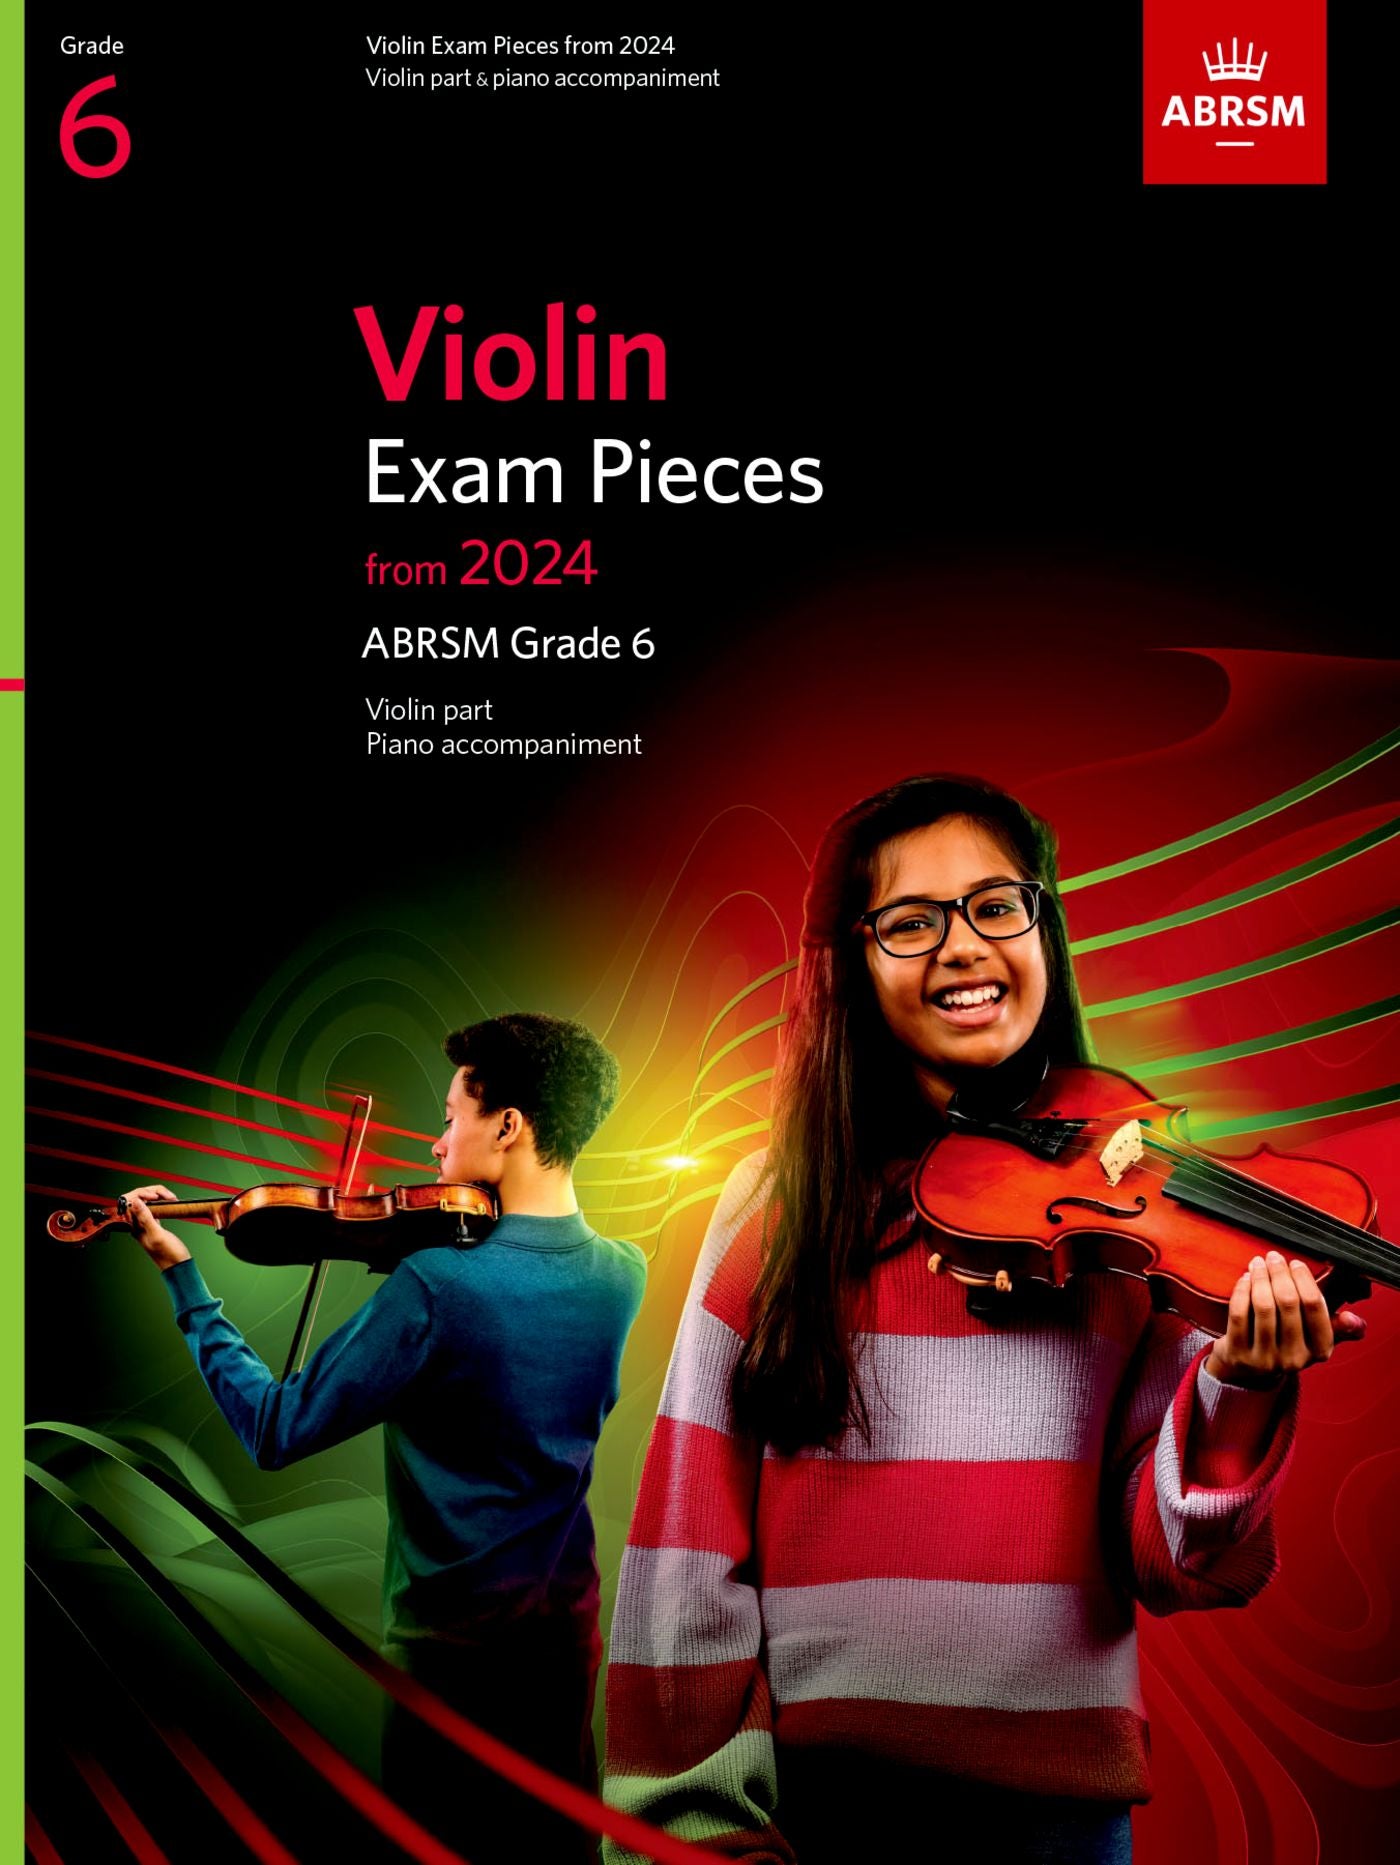 ABRSM Violin Exam Pieces 2024, Grade 6